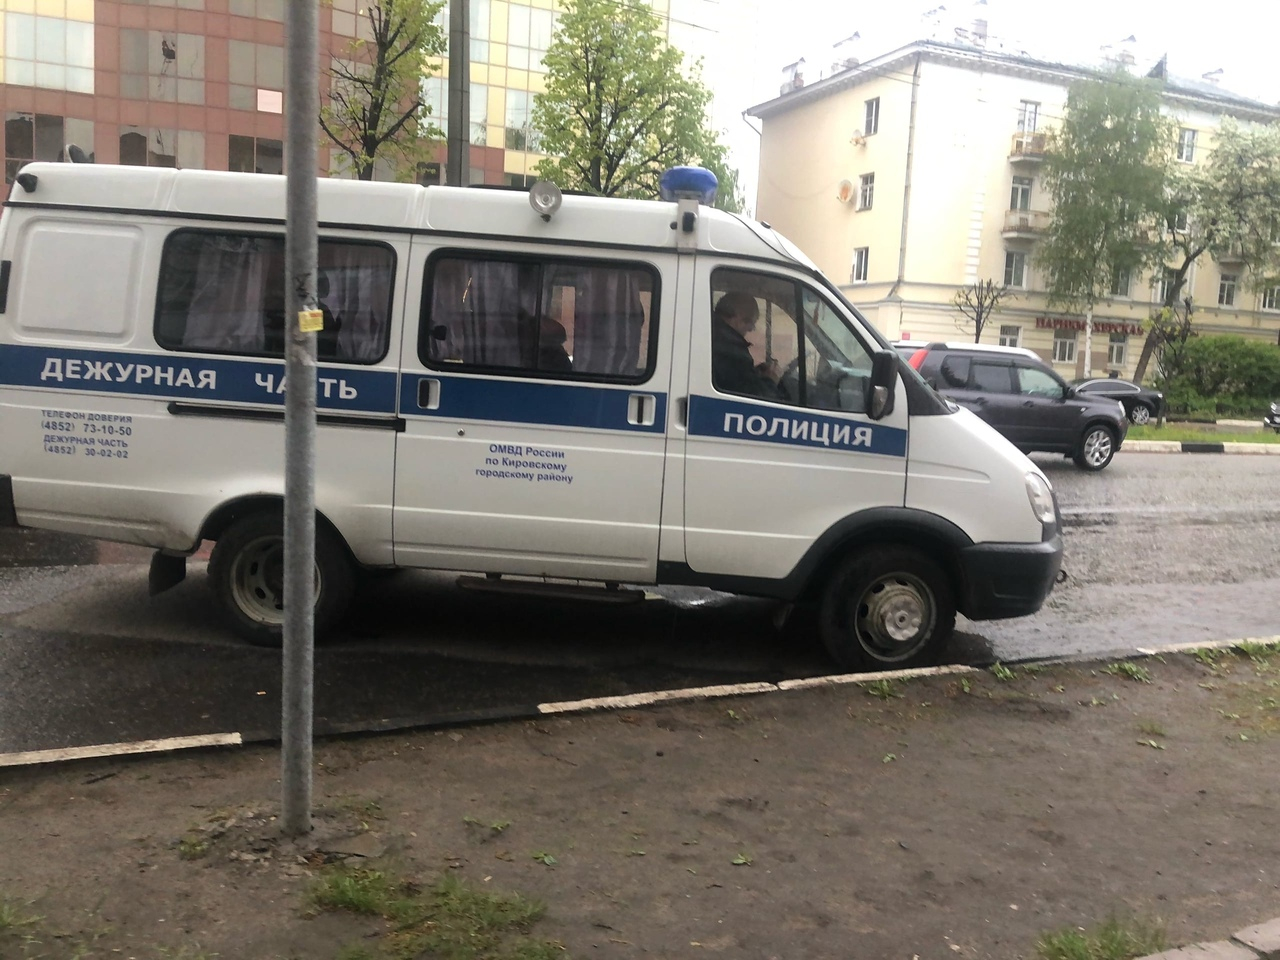 Вышел и избил полицейского: освободившийся зек провел на свободе один яркий день в Ярославле